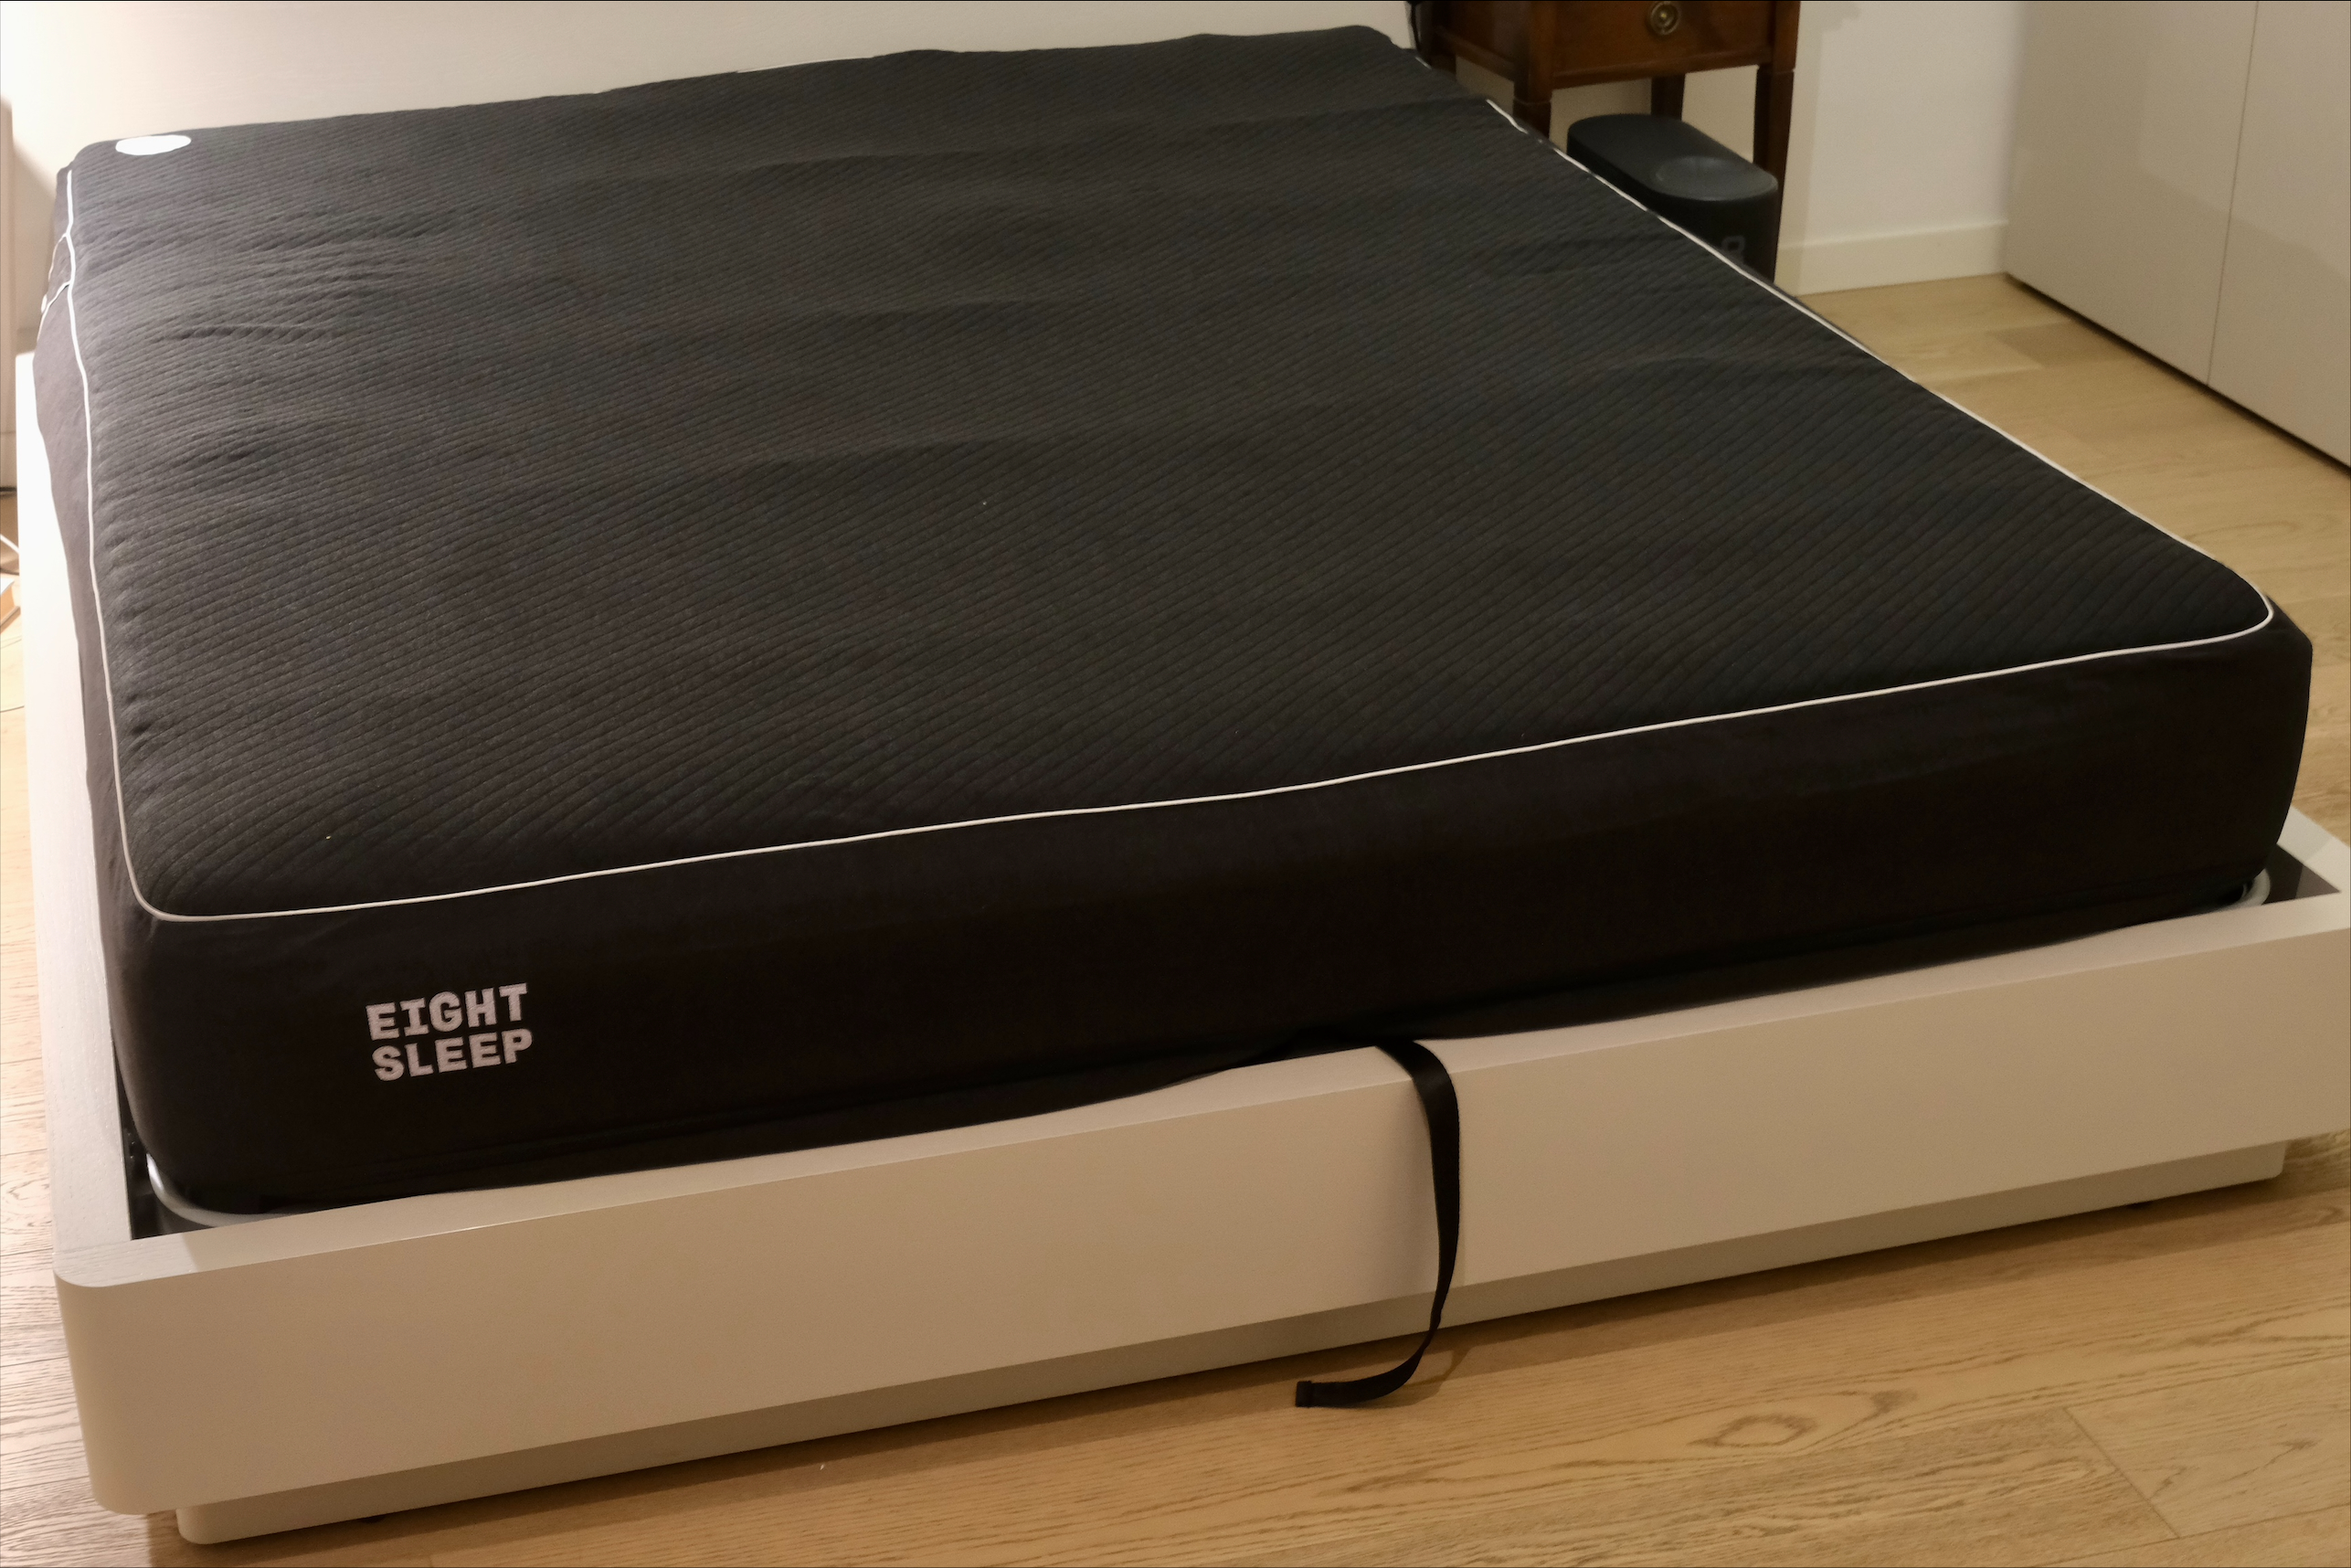 
                                    
                                Abbiamo provato il materasso smart (da 2.500 euro) su cui dorme Lewis Hamilton